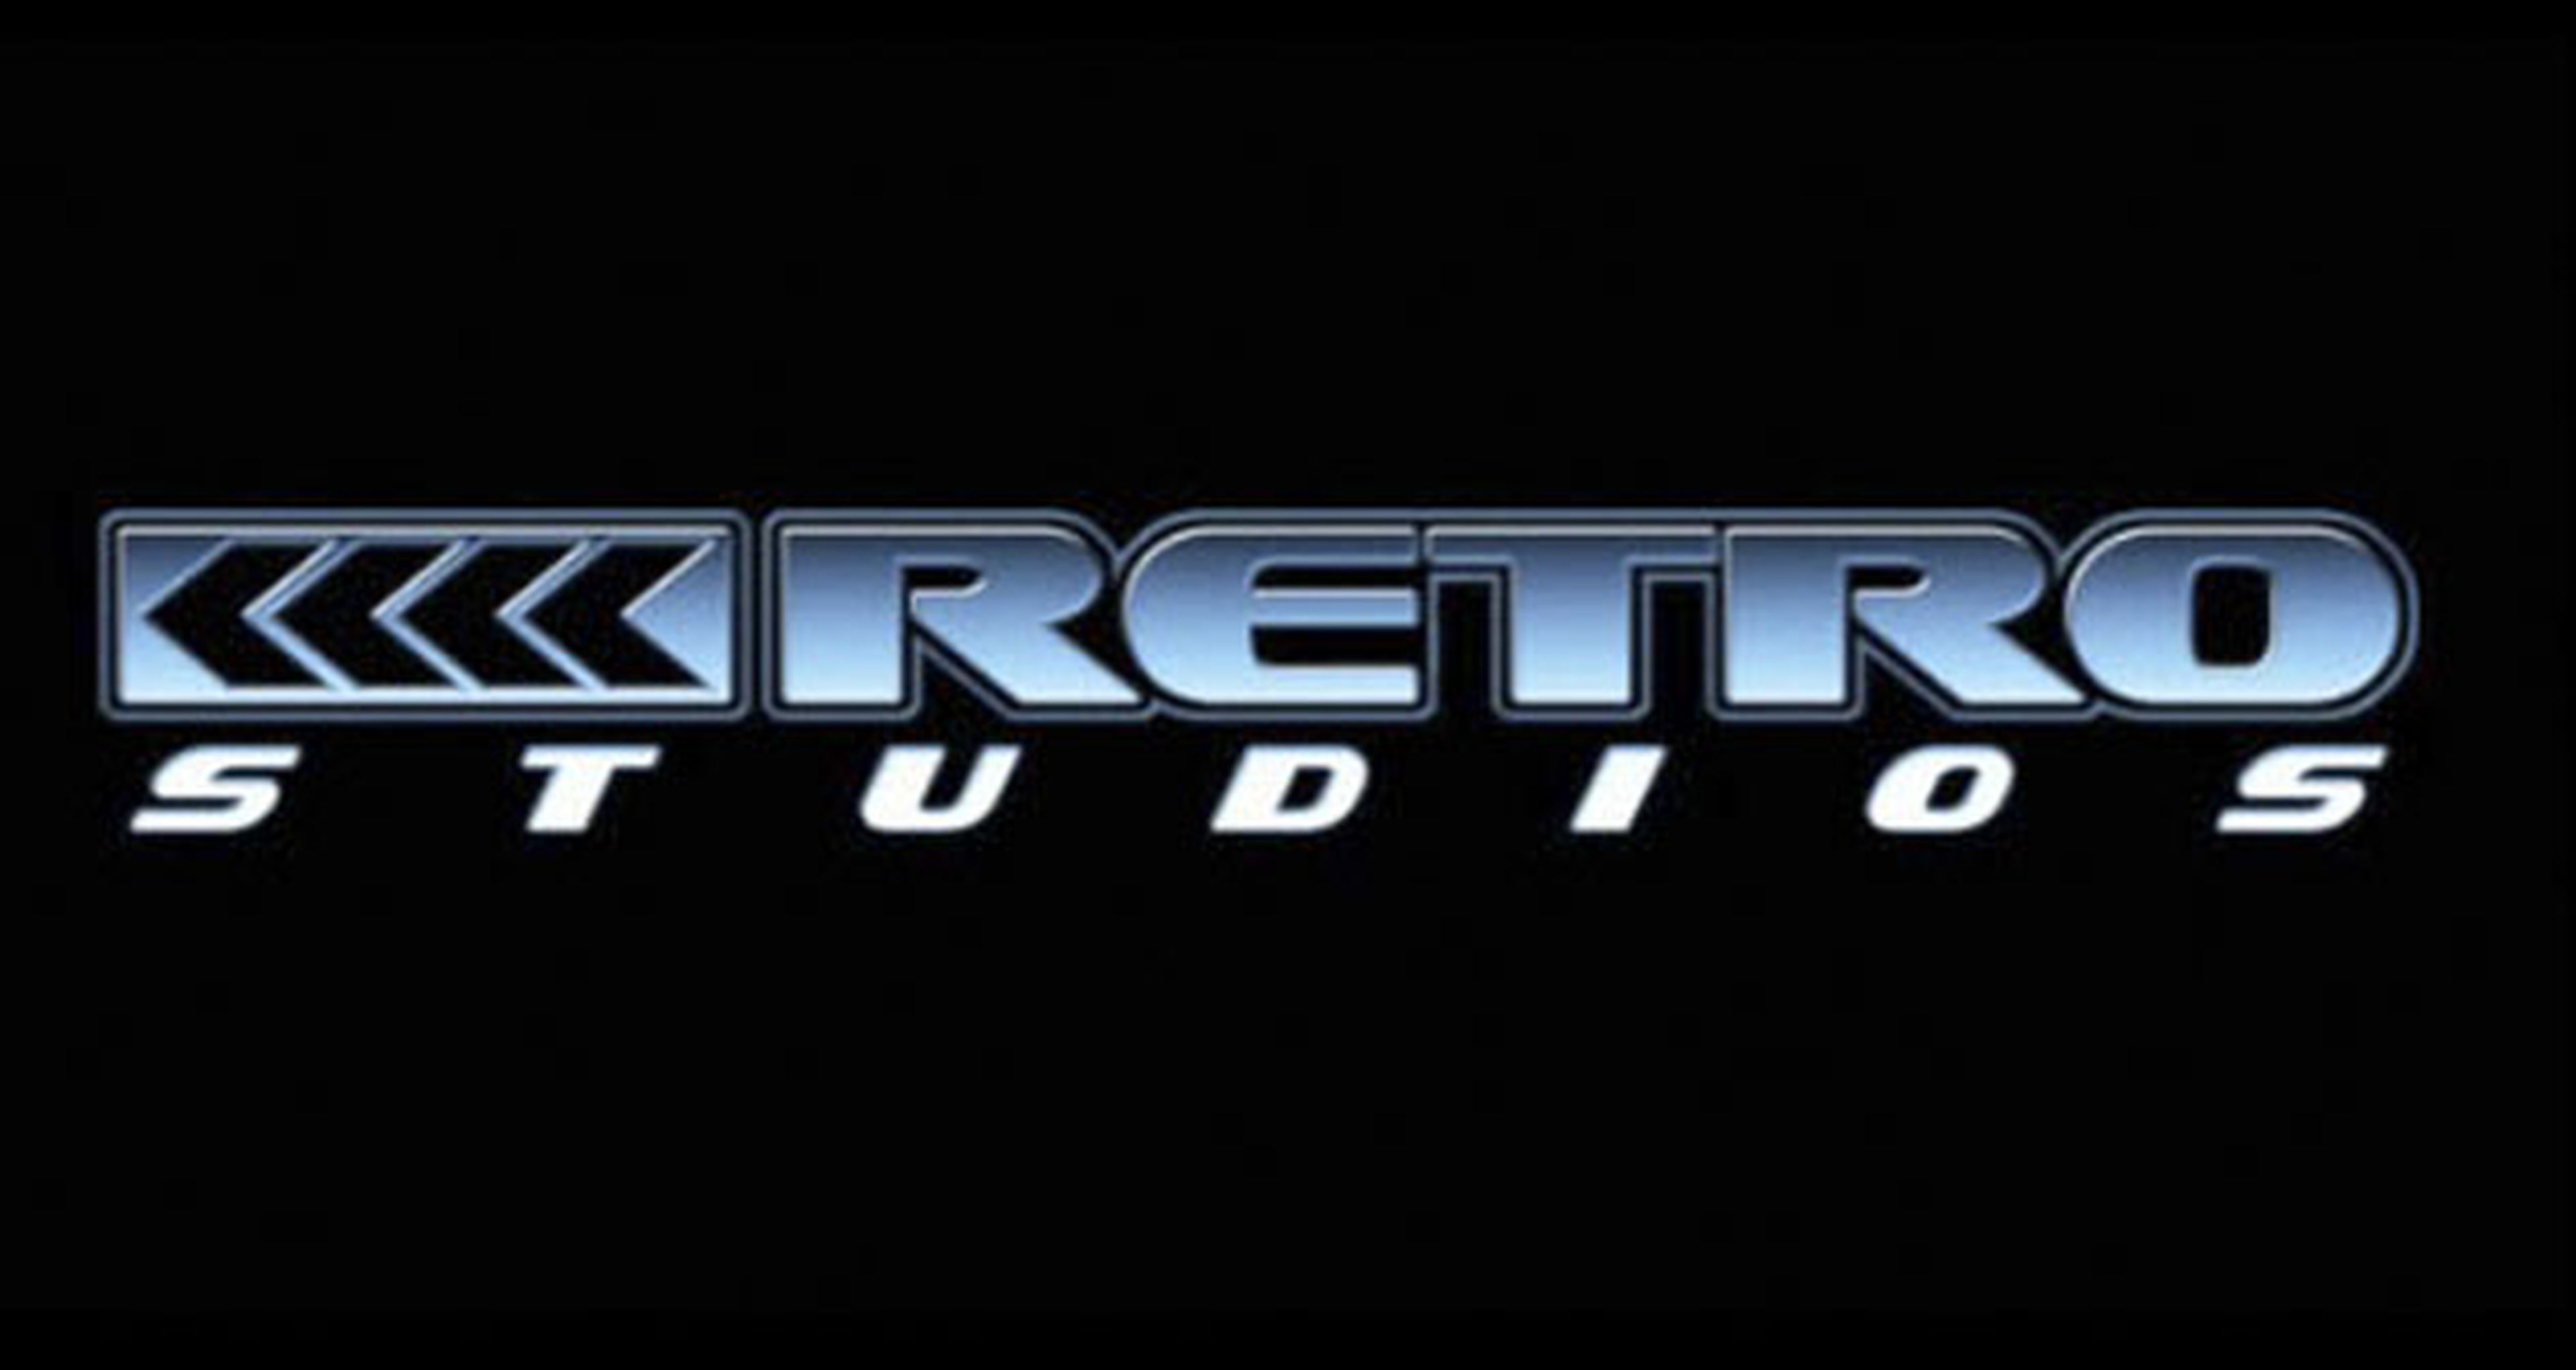 Retro Studios trabaja en un juego nuevo